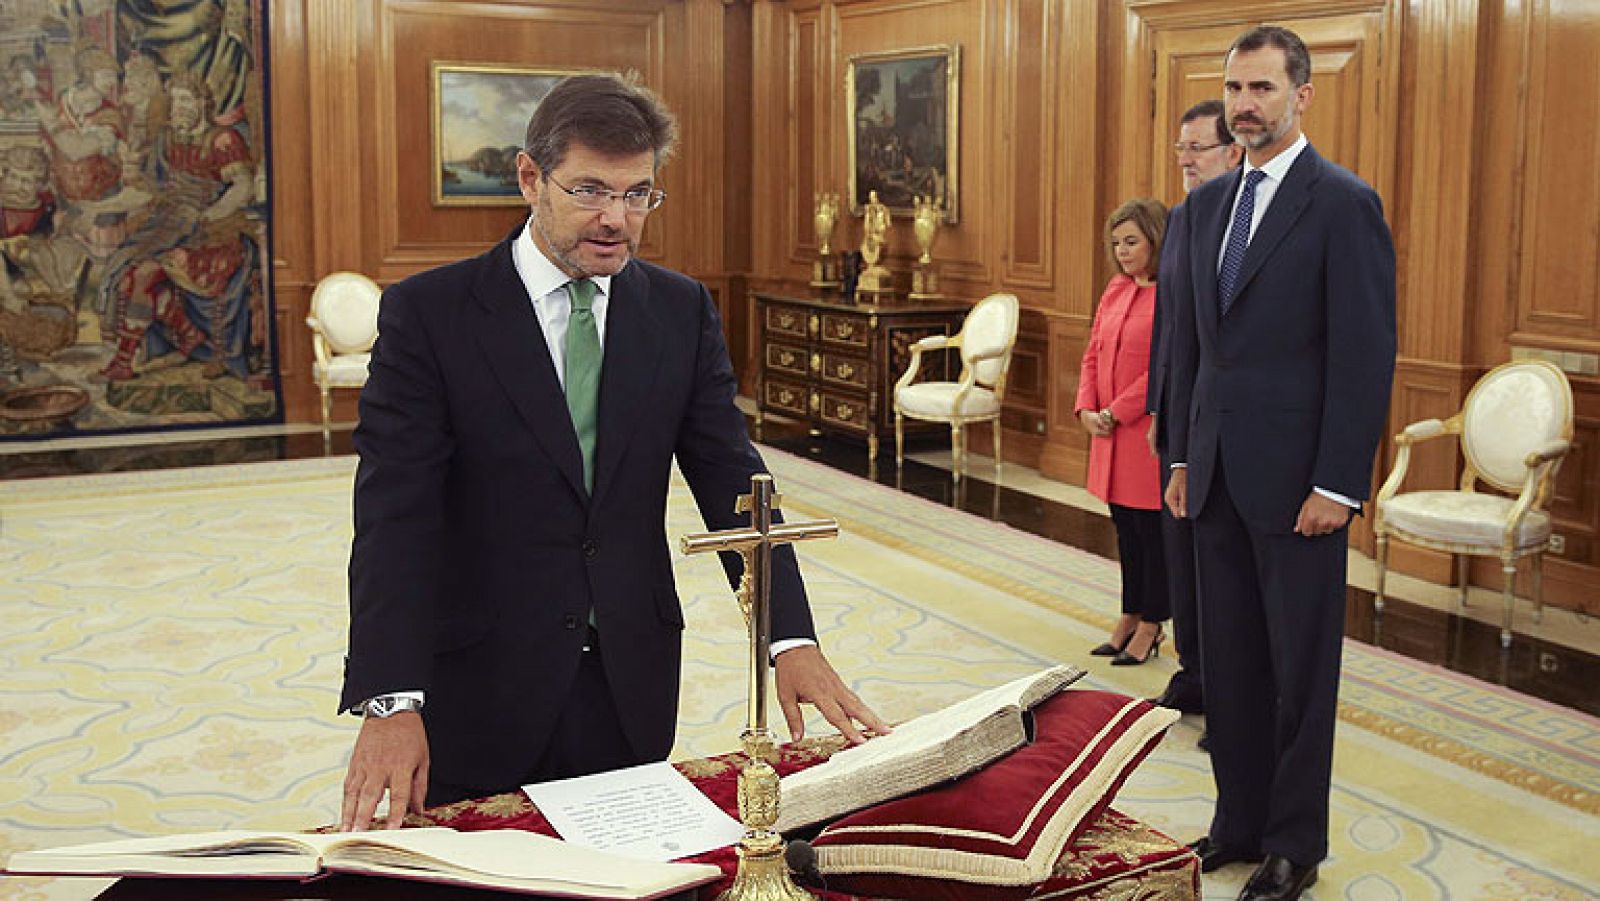 Rafael Catalá jura ante el rey en la Zarzuela como nuevo ministro de Justicia